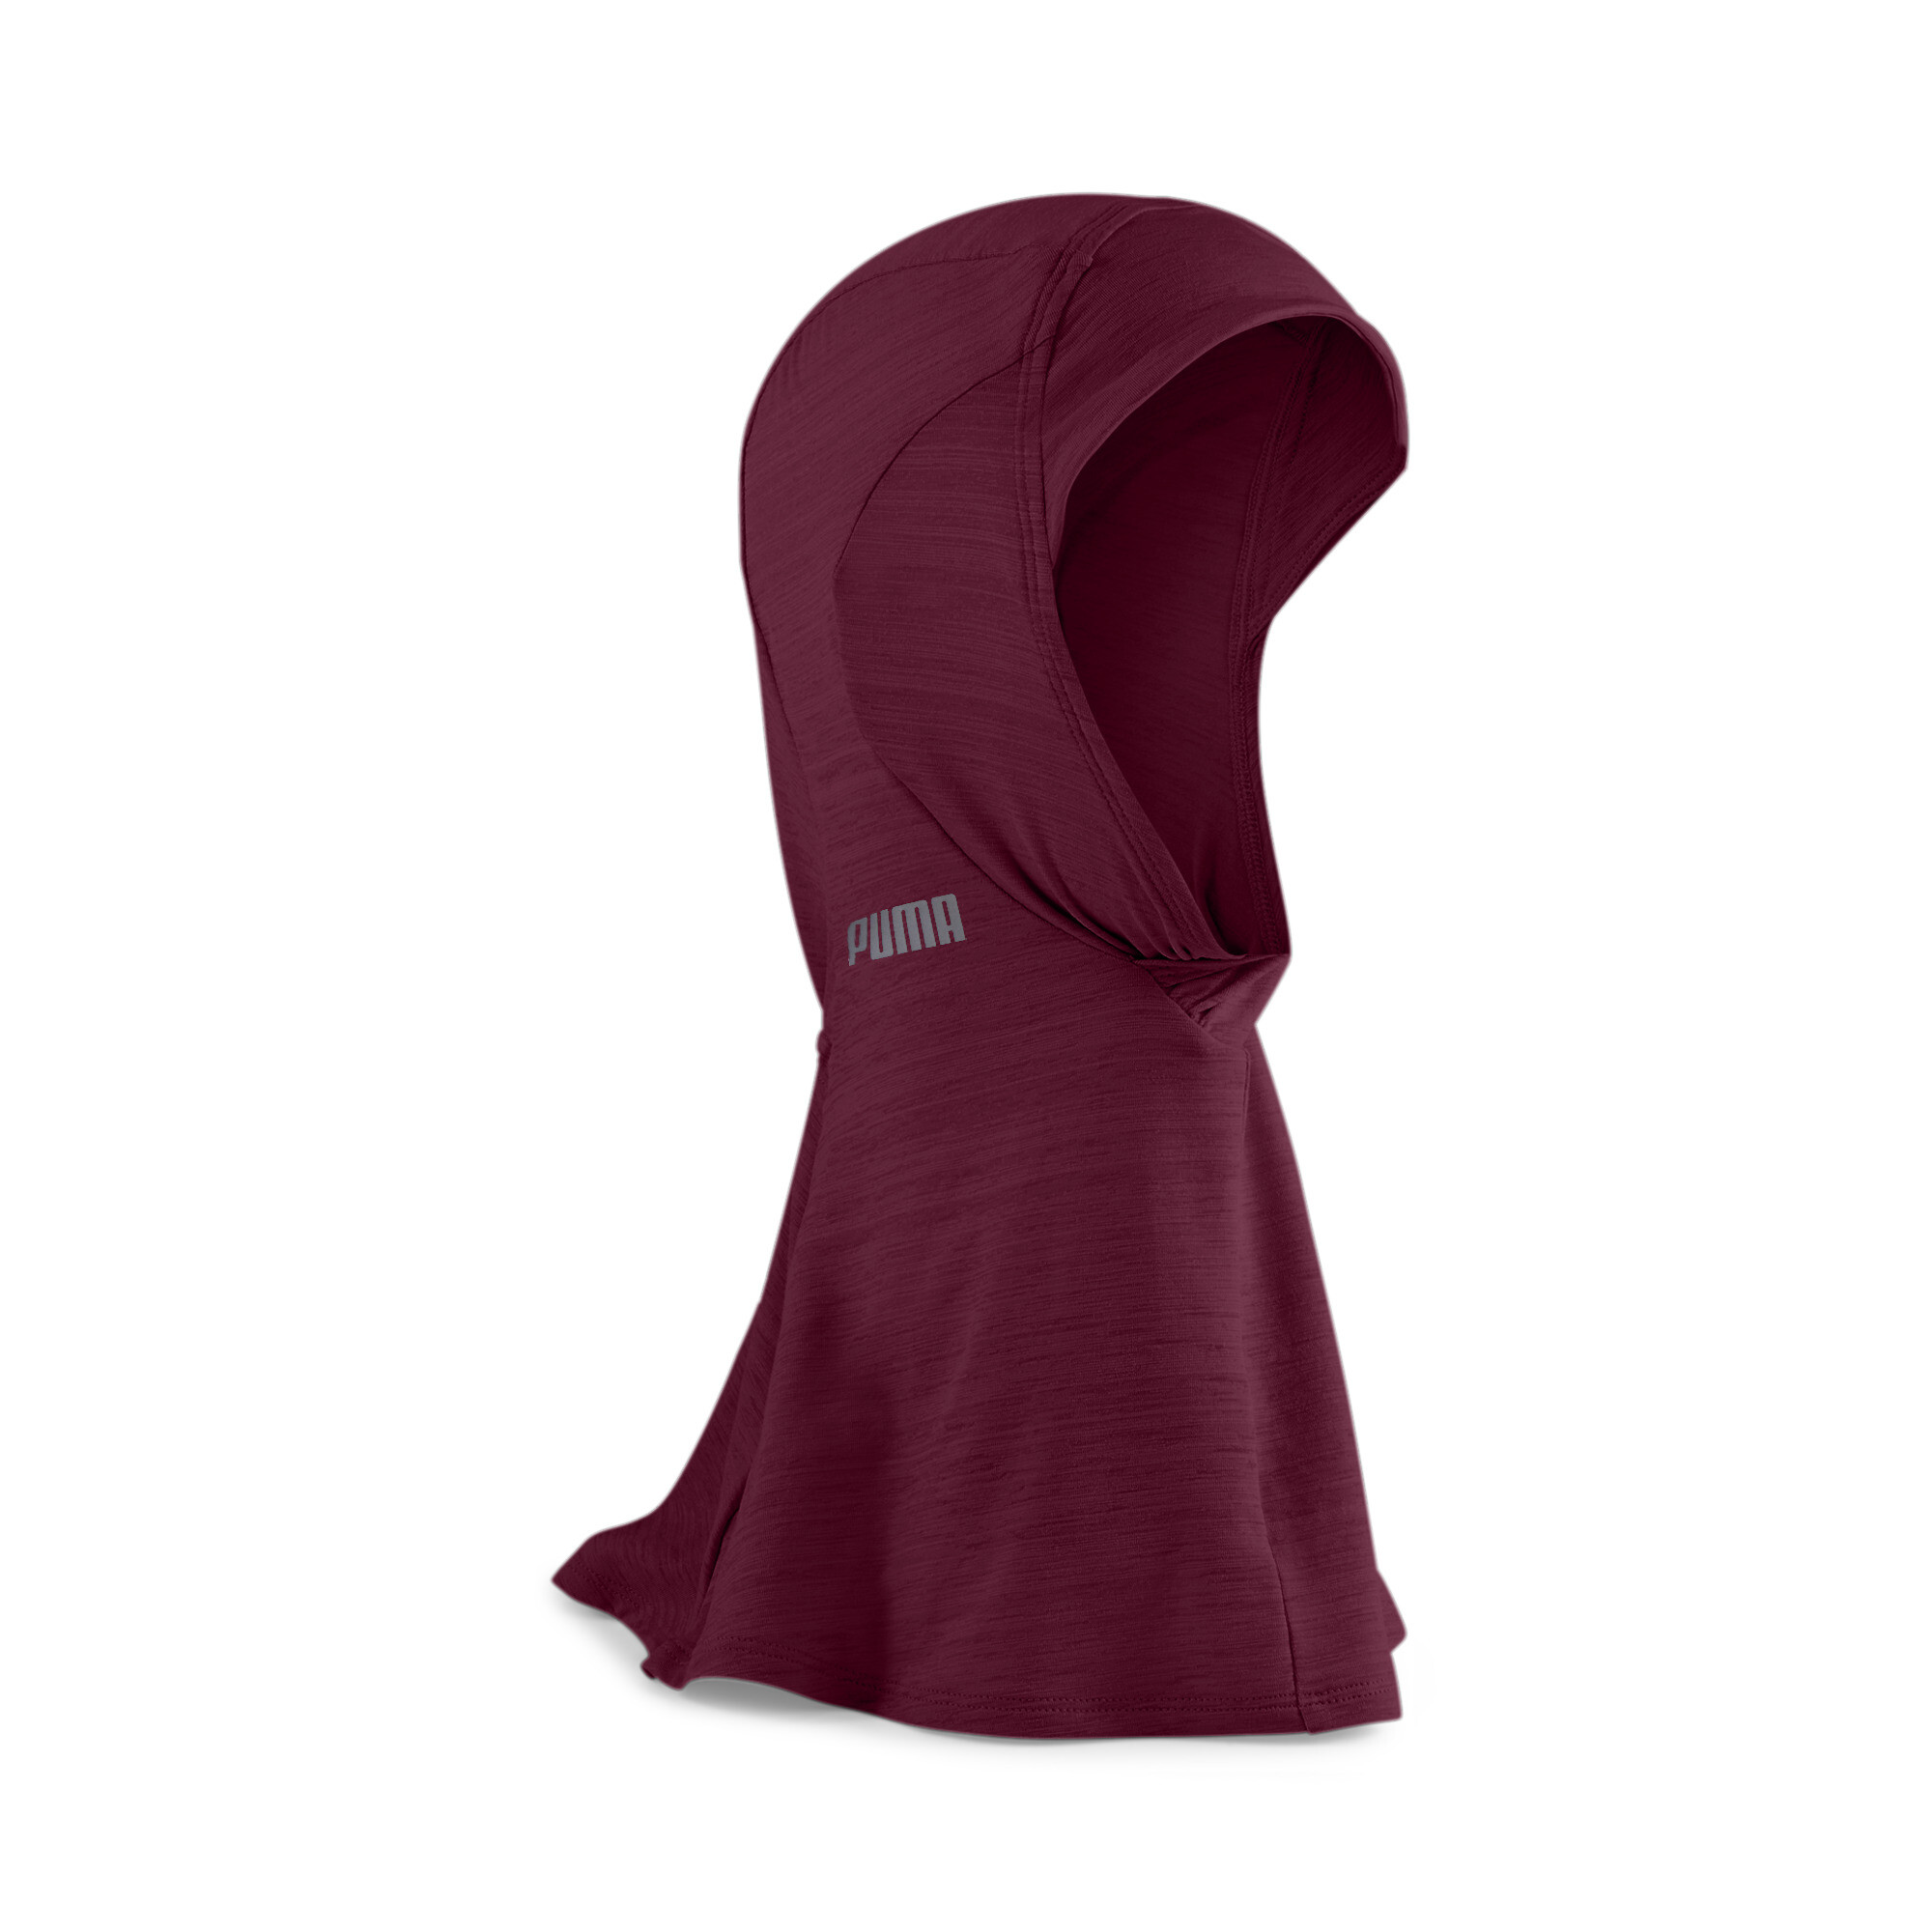 Women's Puma Sports Running Hijab, Red, Size M, Accessories